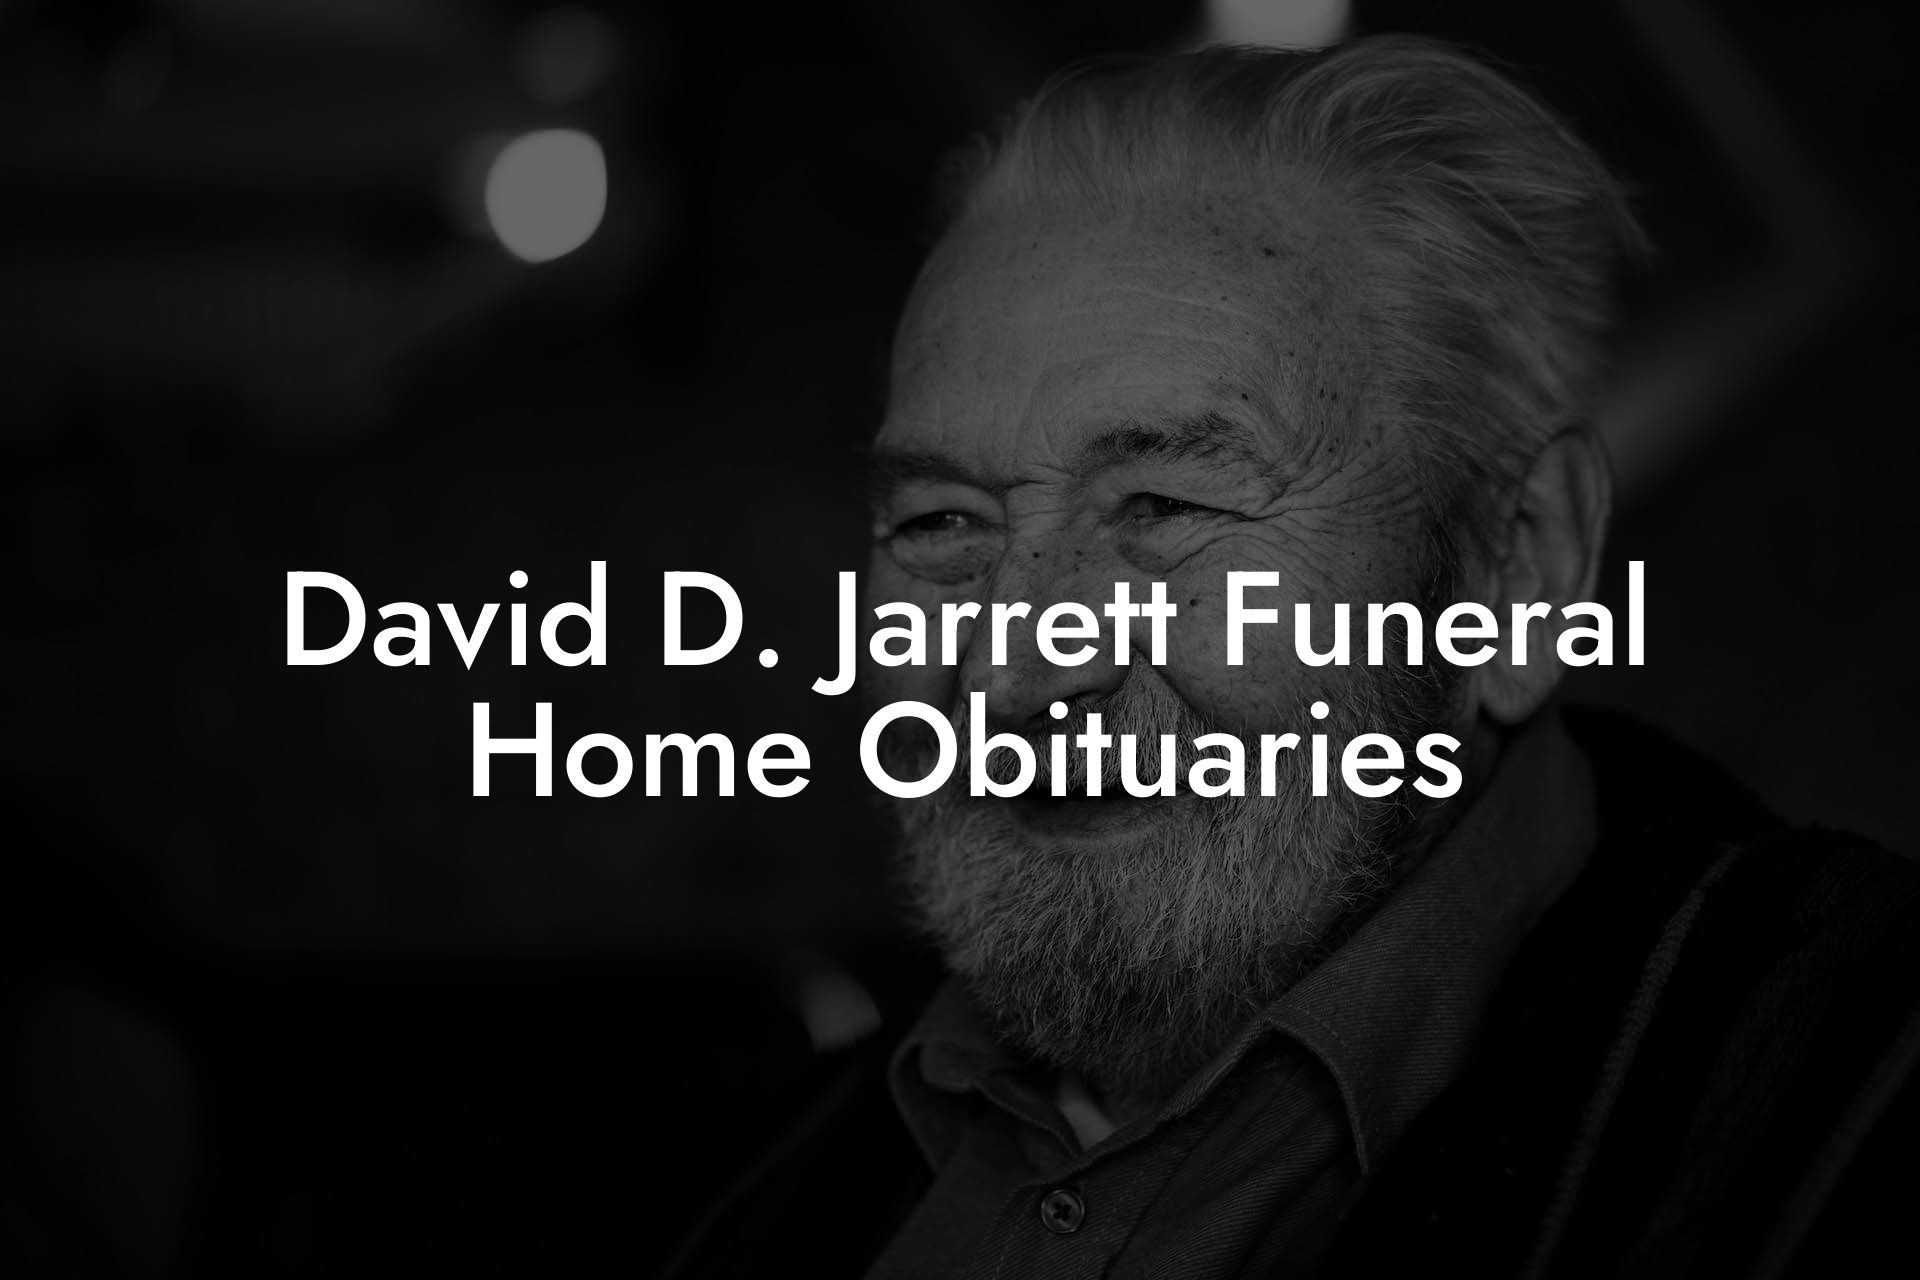 David D. Jarrett Funeral Home Obituaries